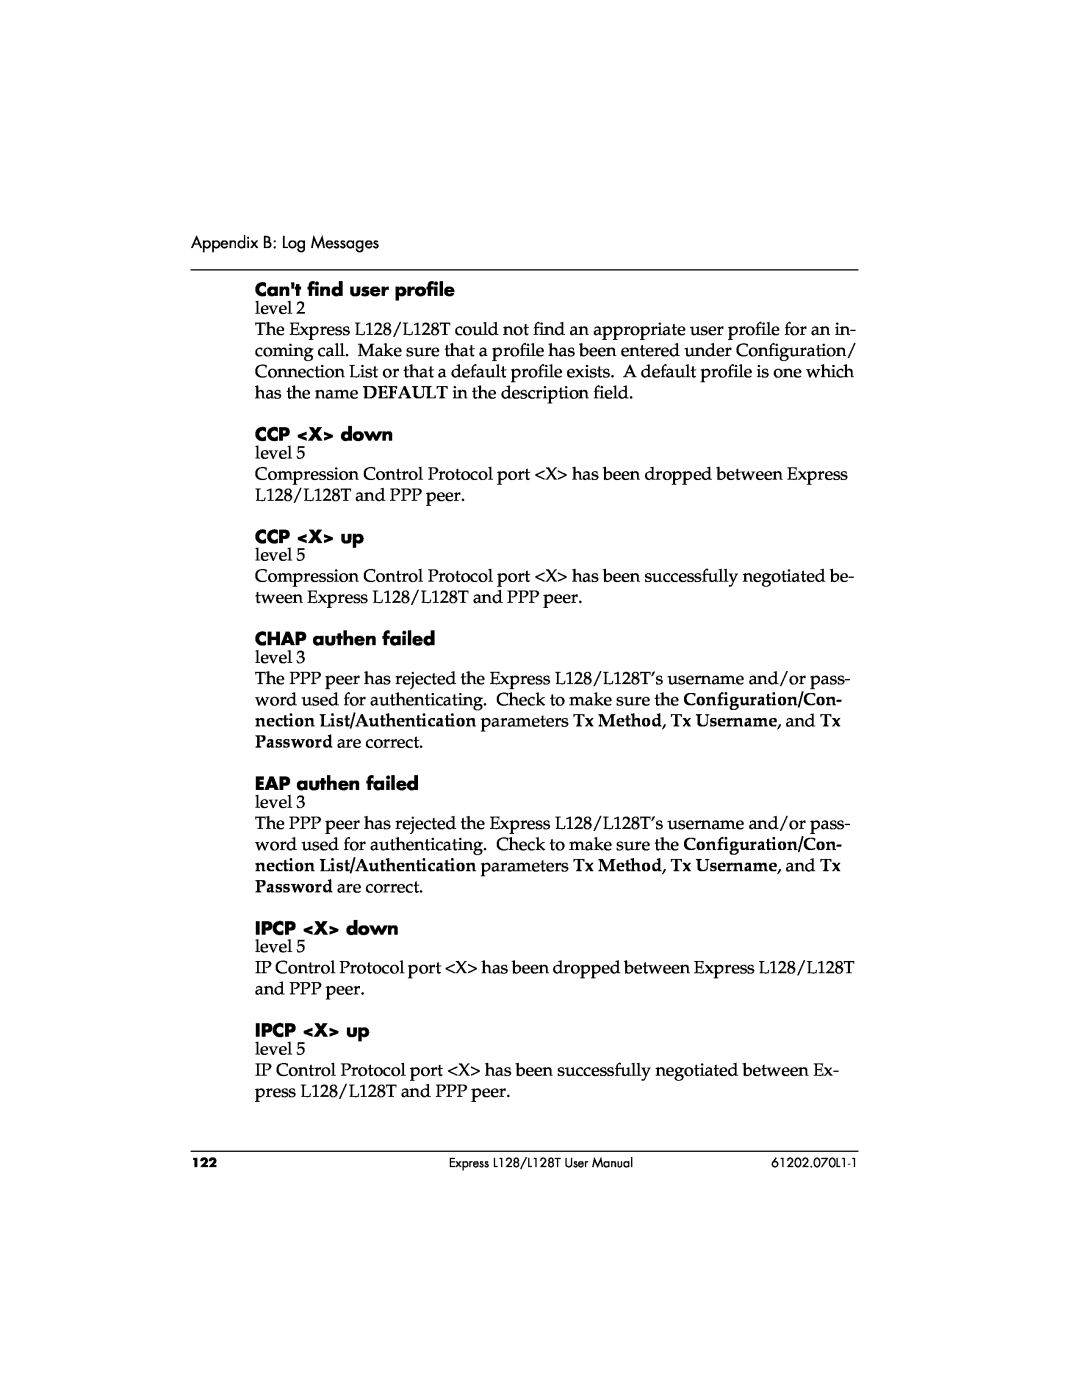 ADTRAN L128T user manual Appendix B Log Messages 